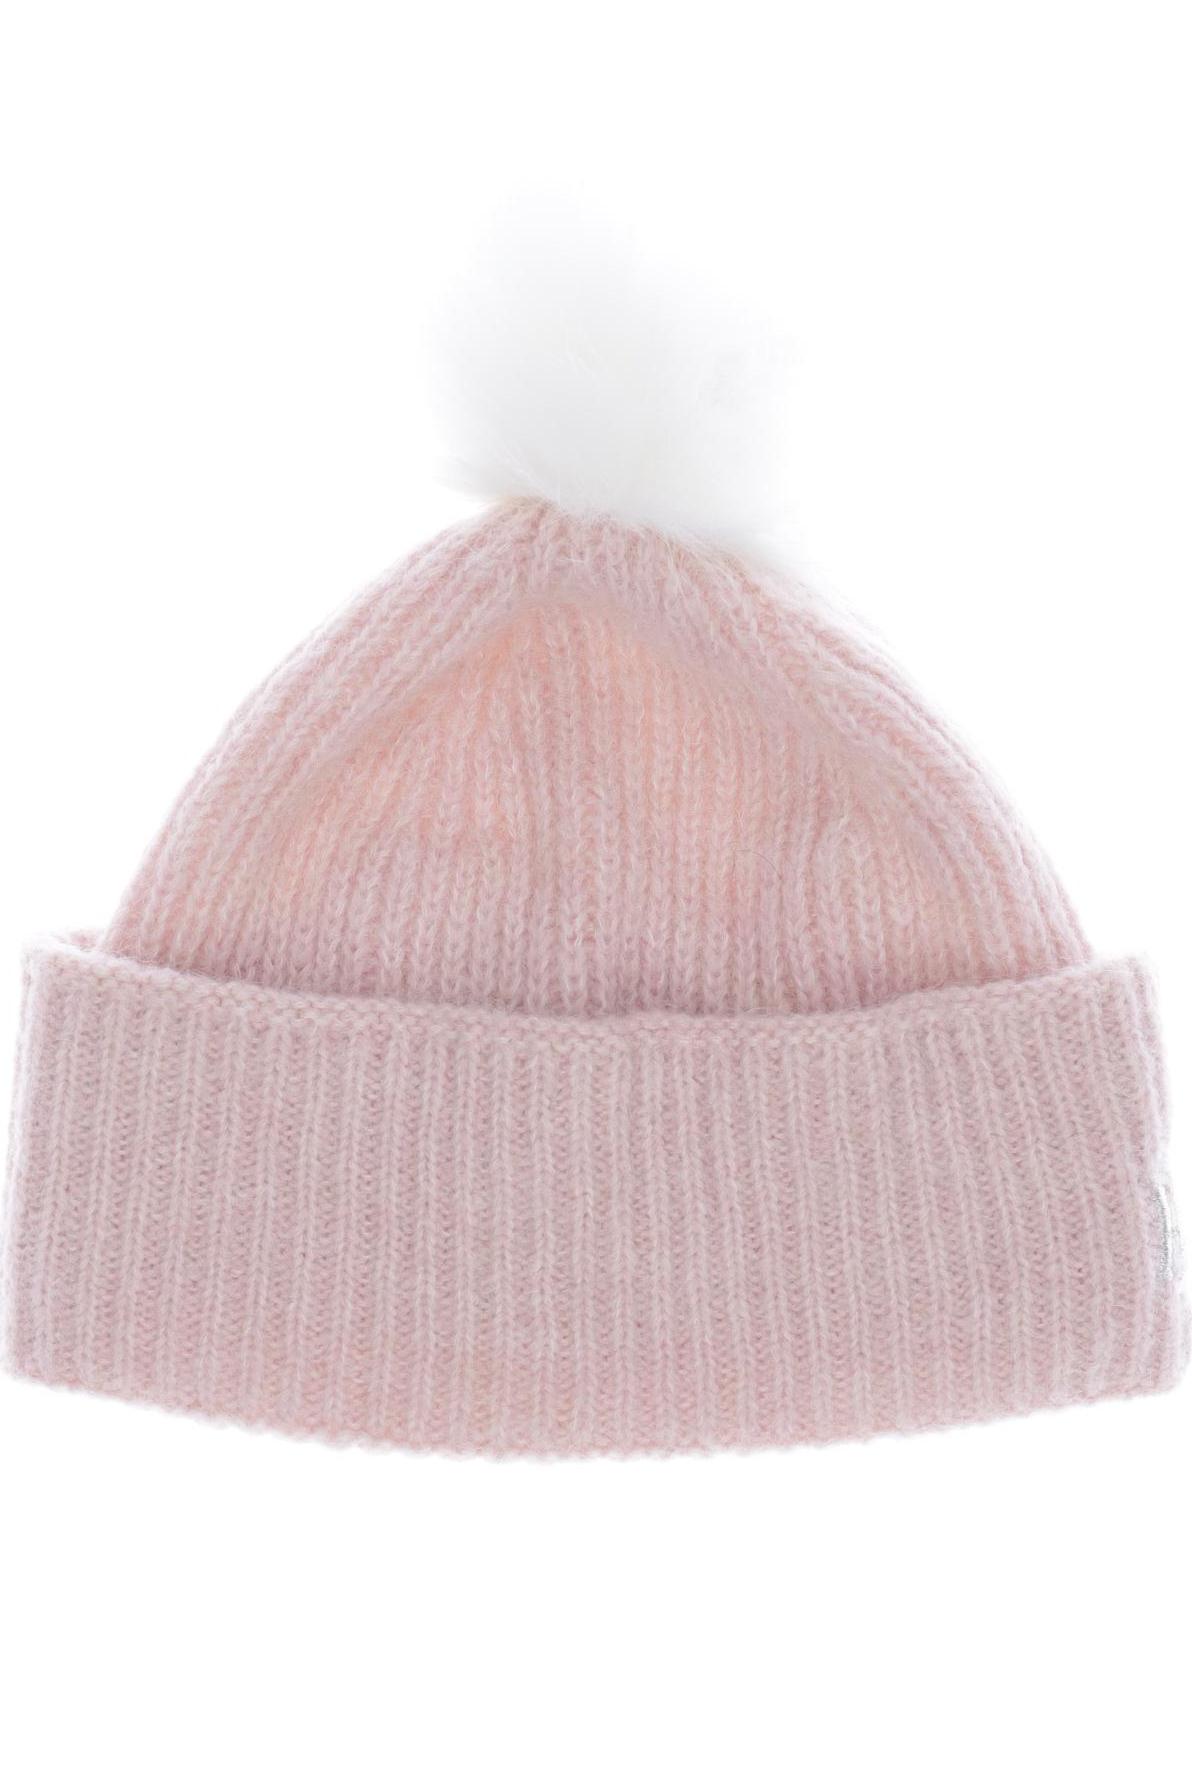 Tommy Hilfiger Damen Hut/Mütze, pink von Tommy Hilfiger